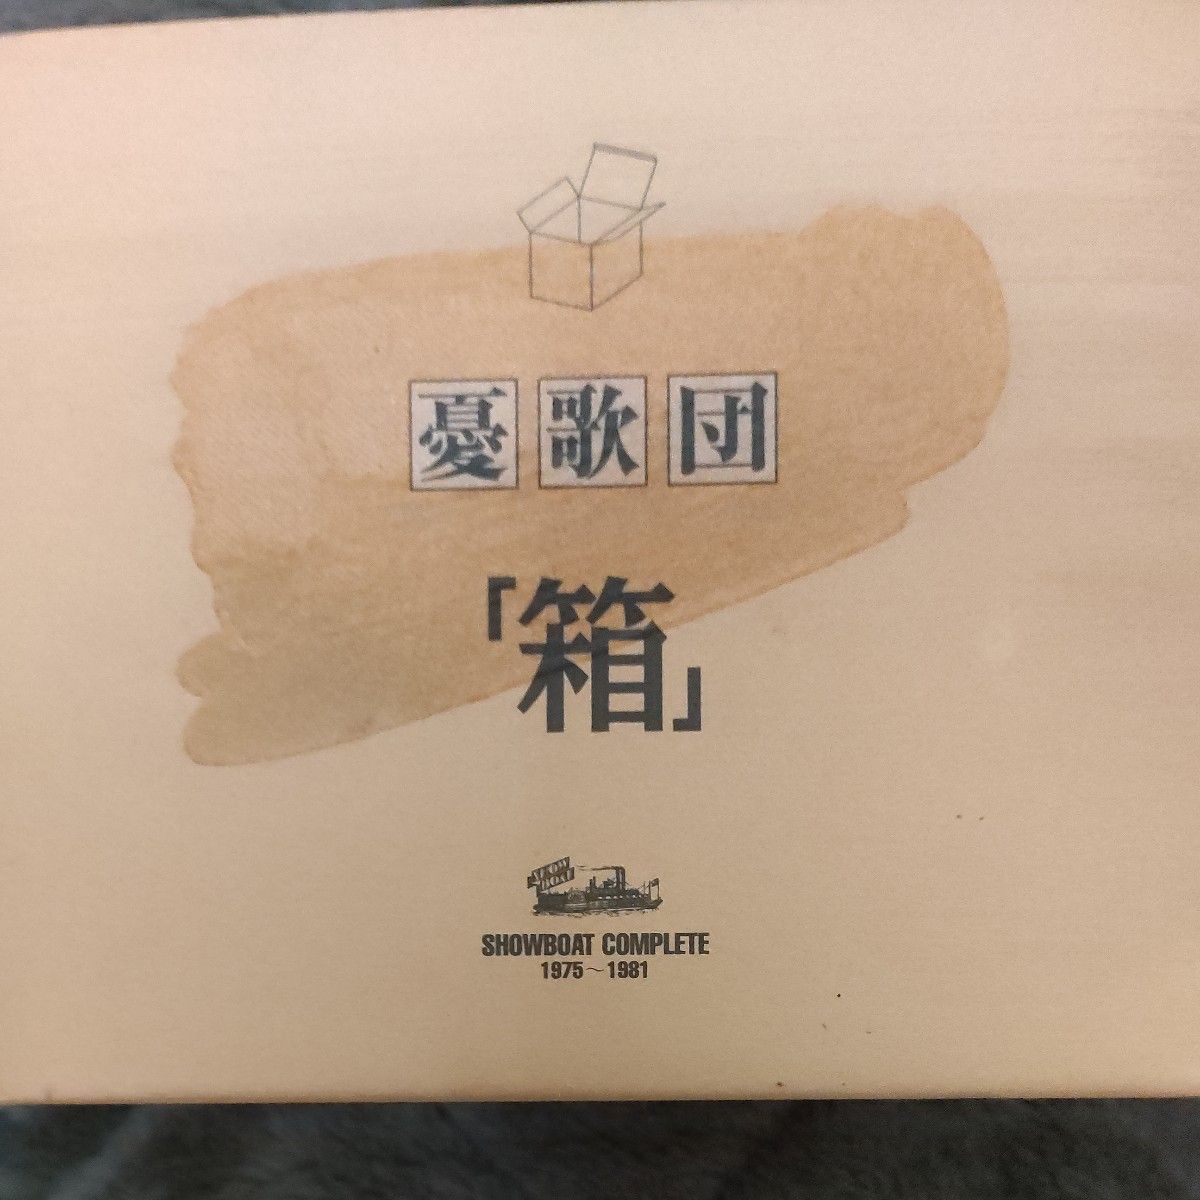 憂歌団 CDBOX【箱】11枚セット